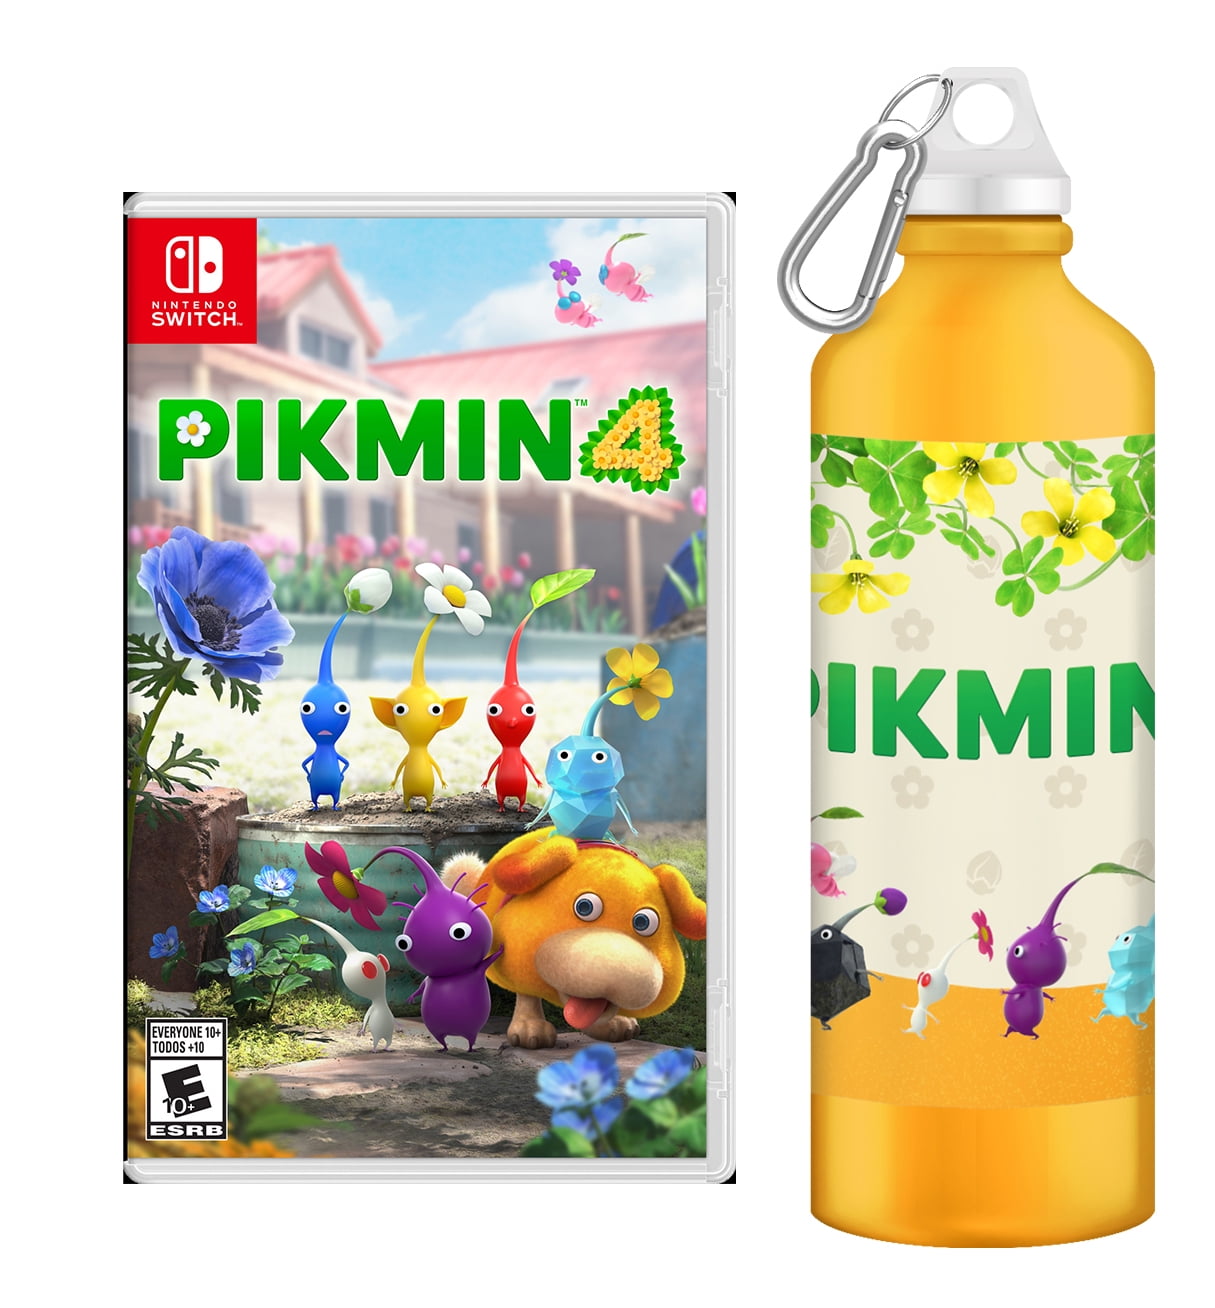 4 Nintendo - Pikmin Switch